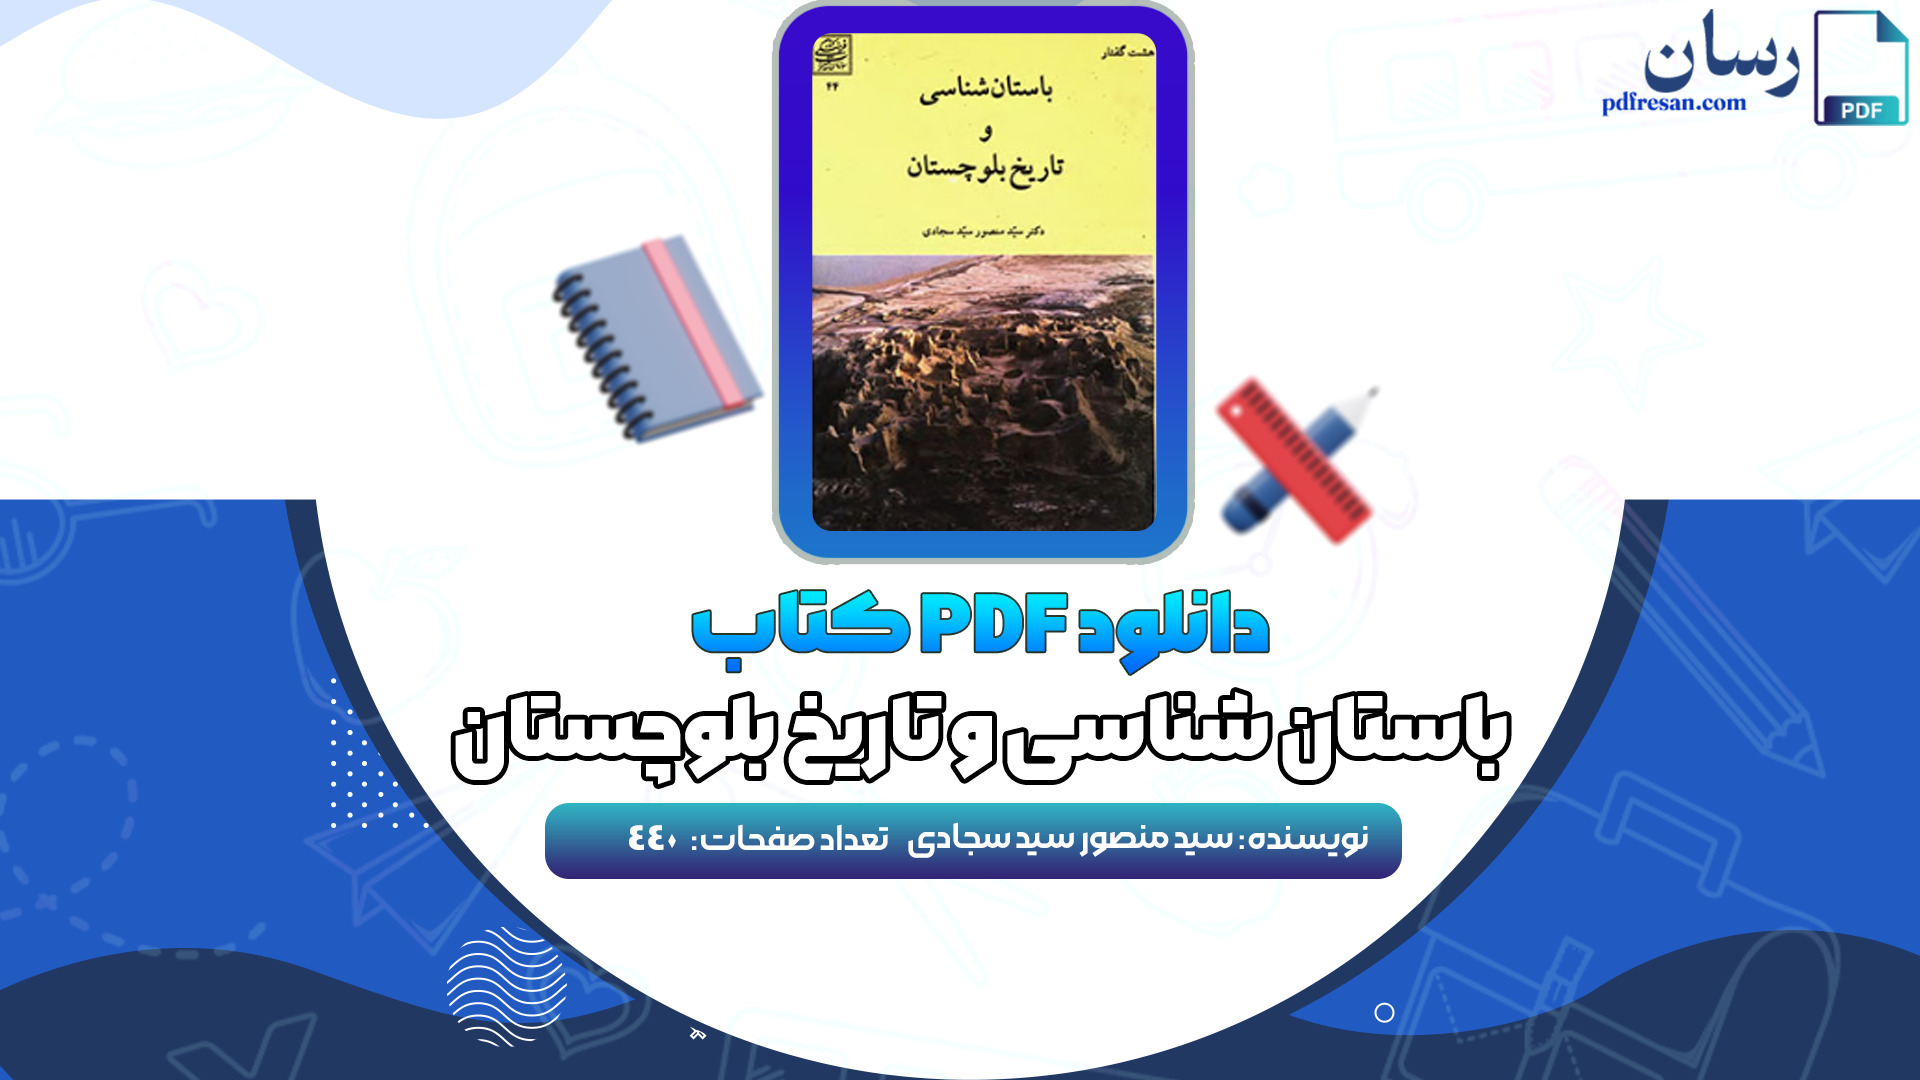 دانلود کتاب باستان شناسی و تاریخ بلوچستان سید منصور سید سجادی PDF